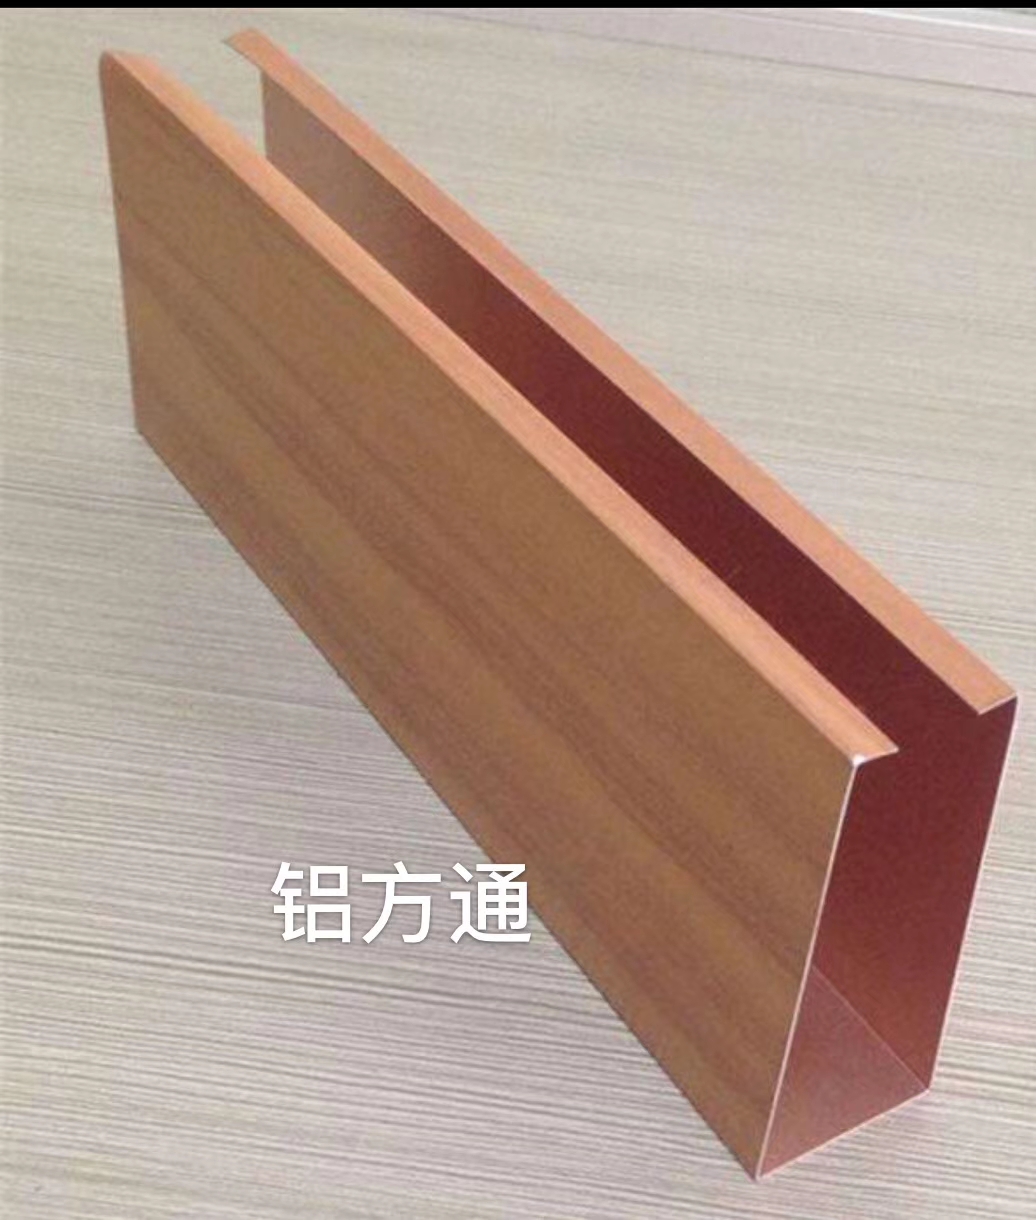 贵州木纹铝方通厂家生产定制铝方通吊顶